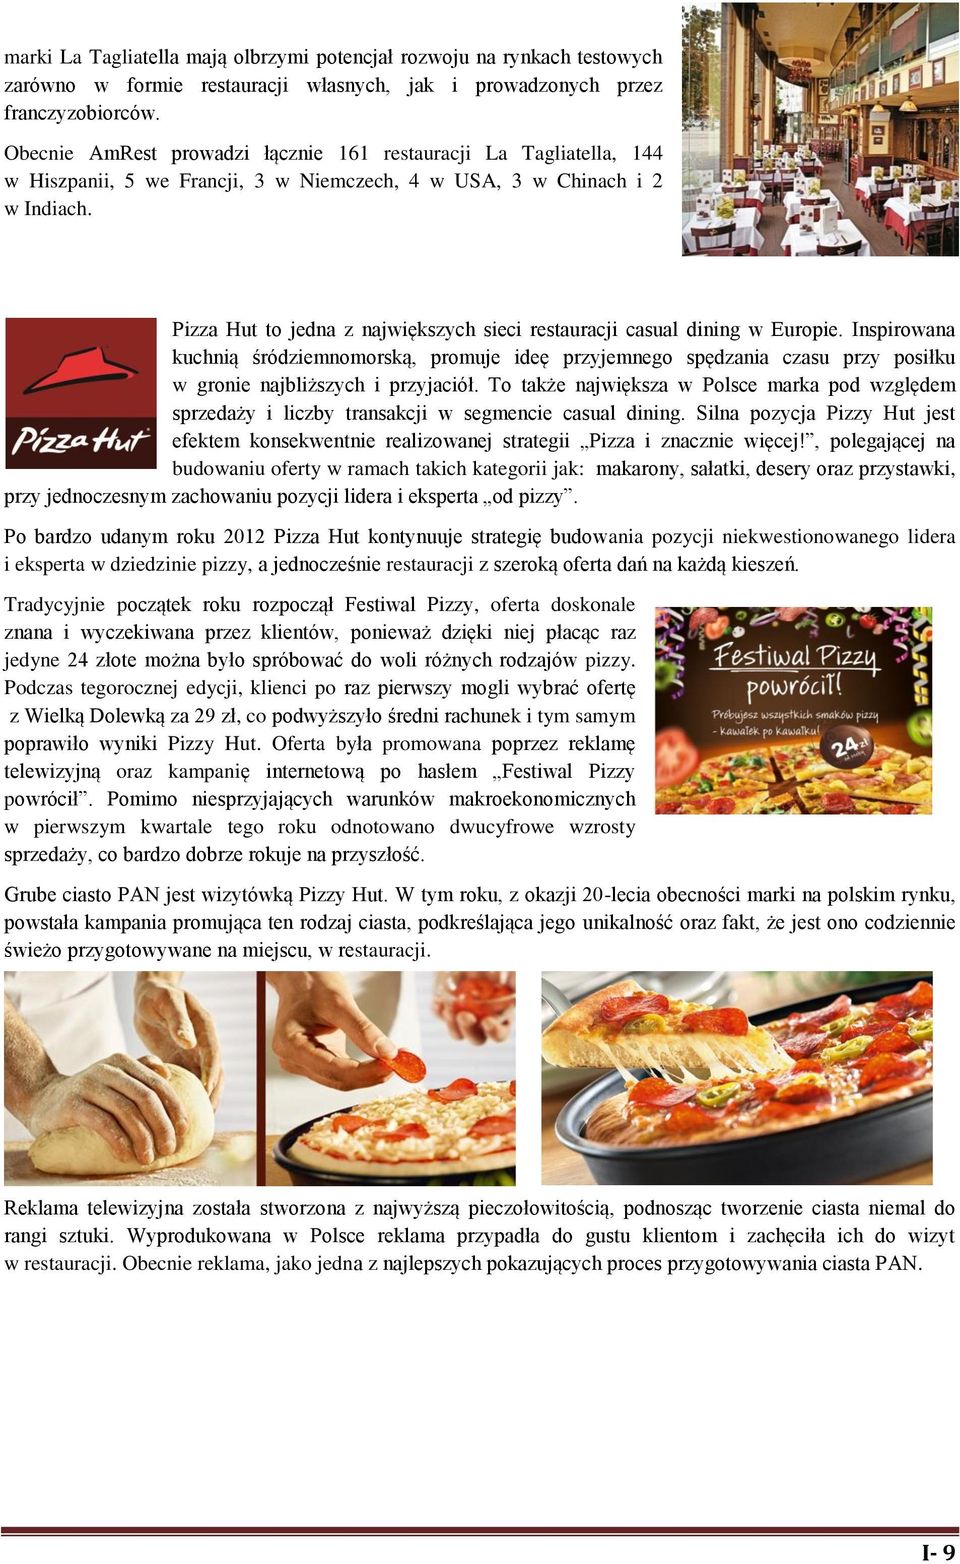 Pizza Hut to jedna z największych sieci restauracji casual dining w Europie.